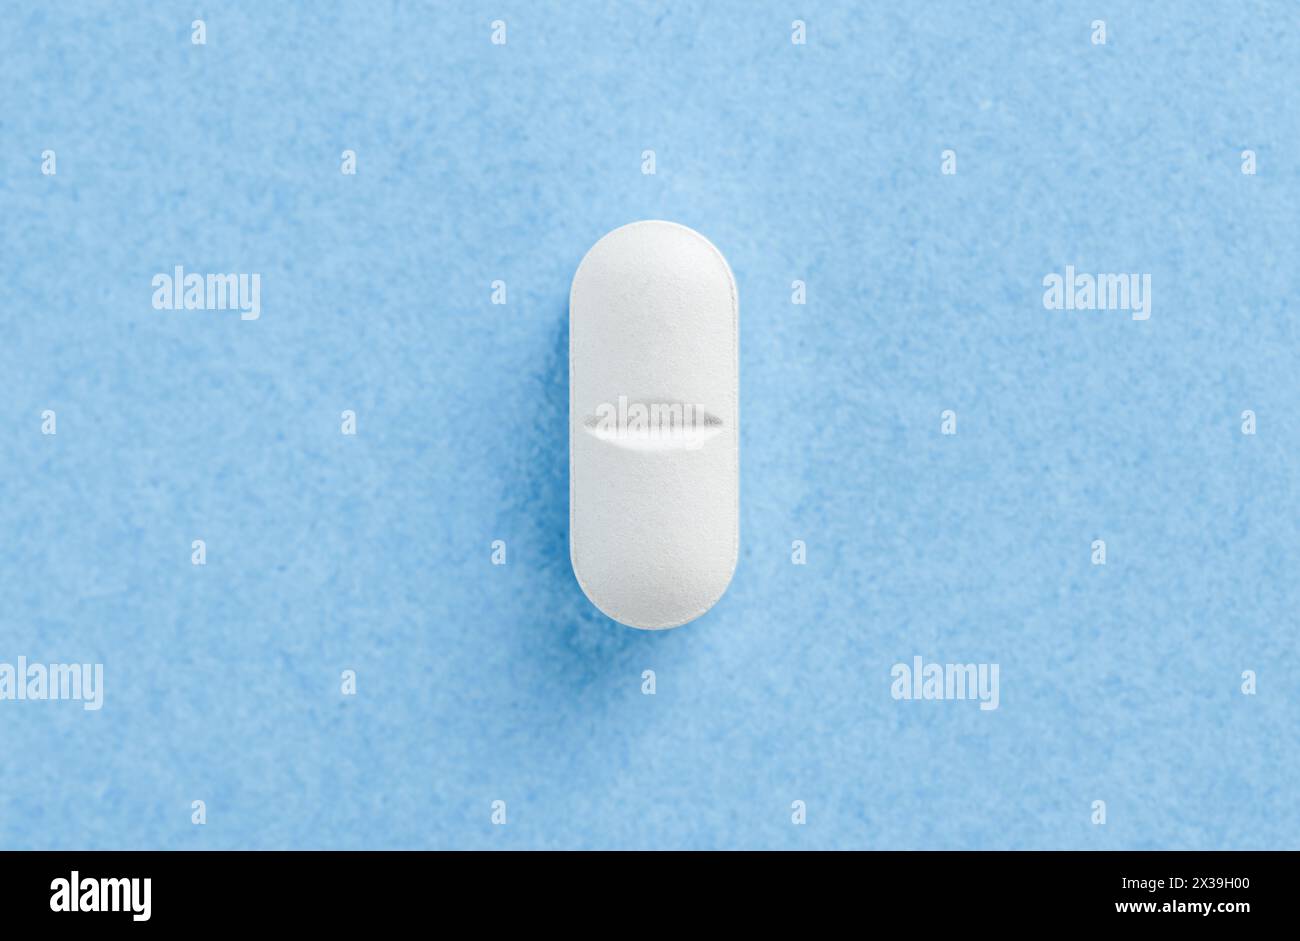 Weiße medizinische Pille Tablette auf blau. Tablet auf blauem Hintergrund mit Kopierraum. Gesundheitskonzept Stockfoto